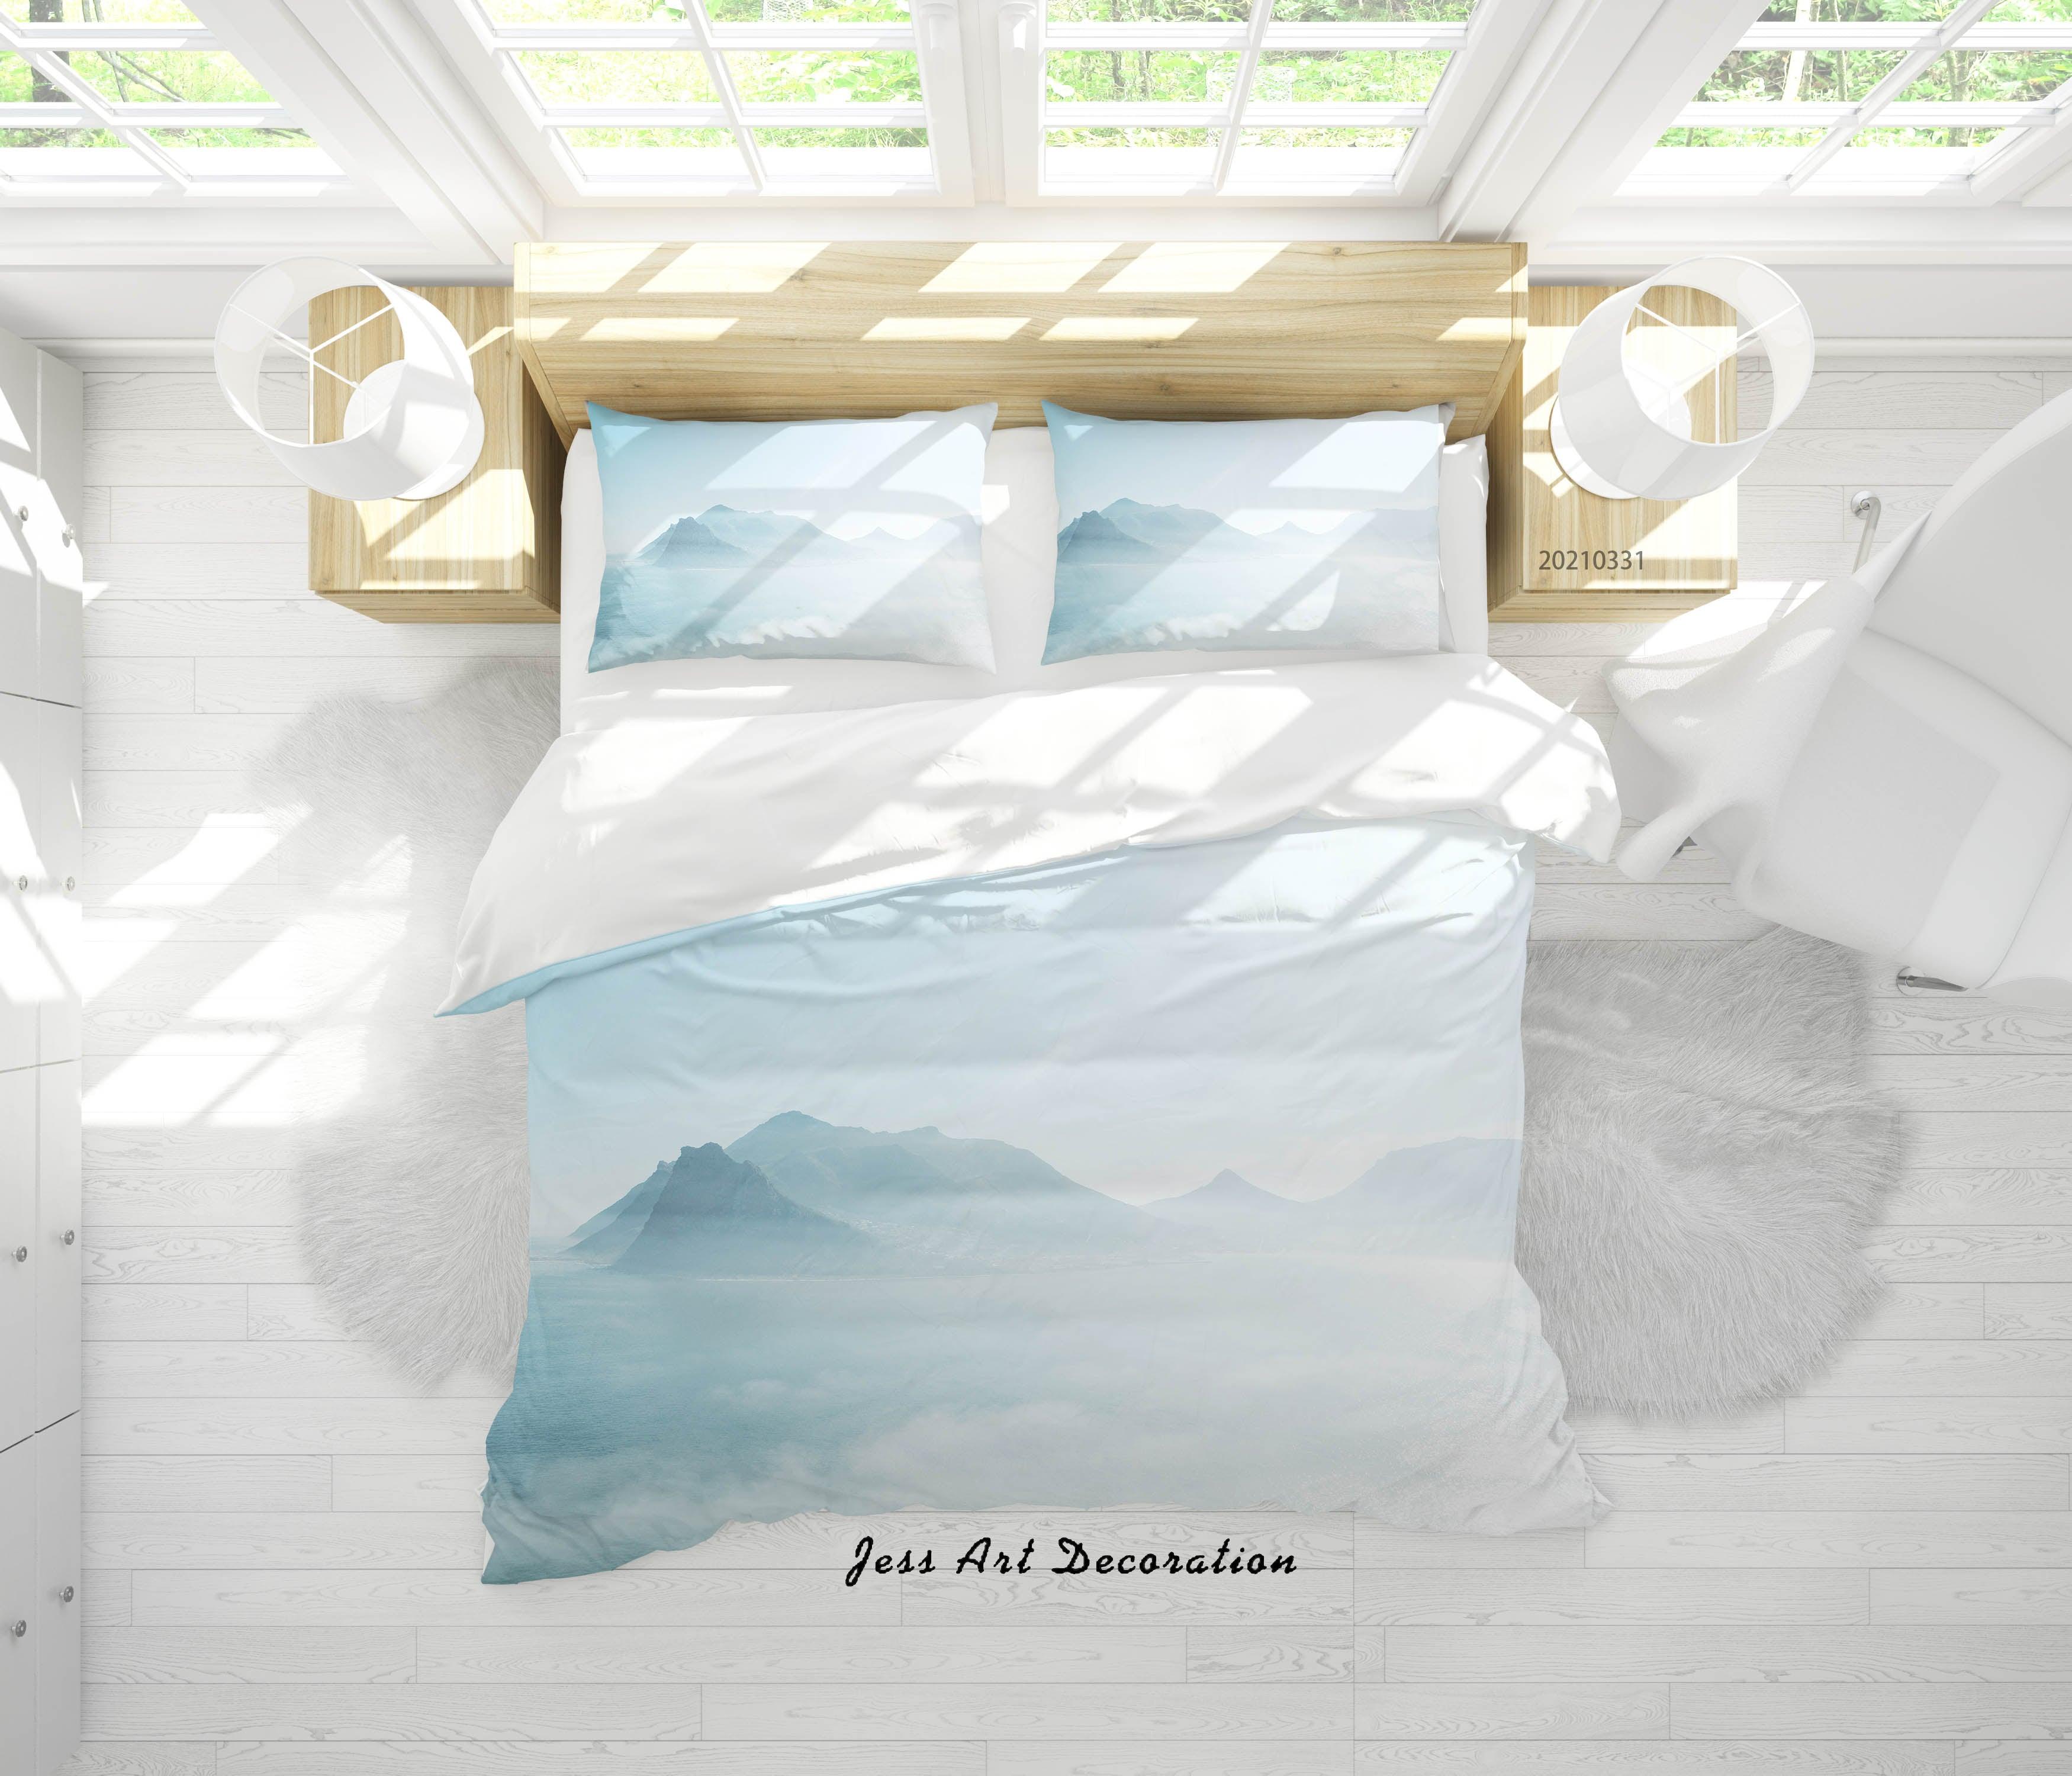 3D Watercolor Mountain Landscape Quilt Cover Set Bedding Set Duvet Cover Pillowcases 184- Jess Art Decoration